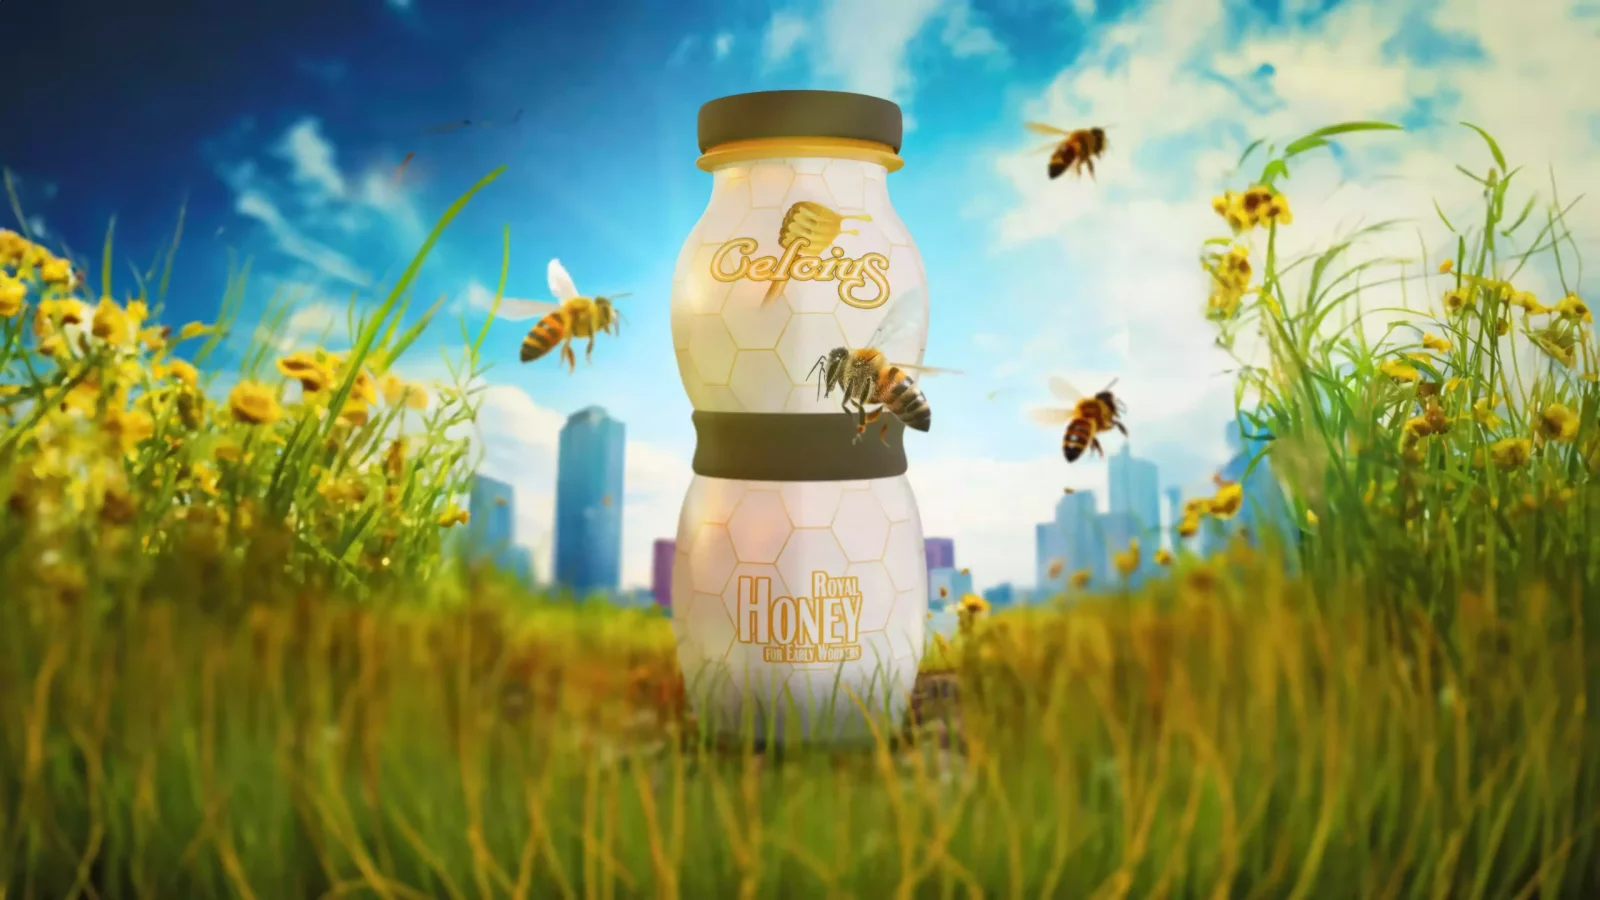 Celcius - Honey